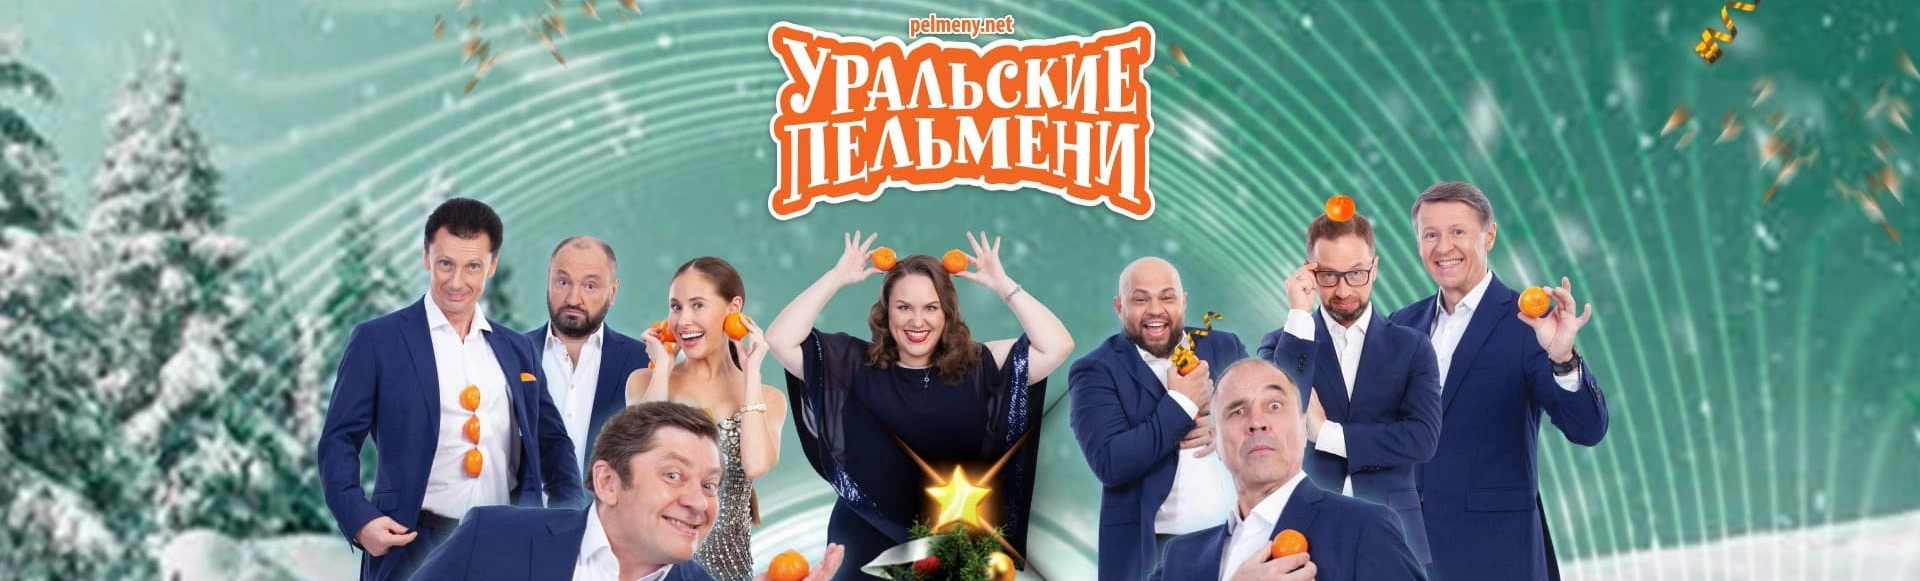 Уральские пельмени 2021 новогодний